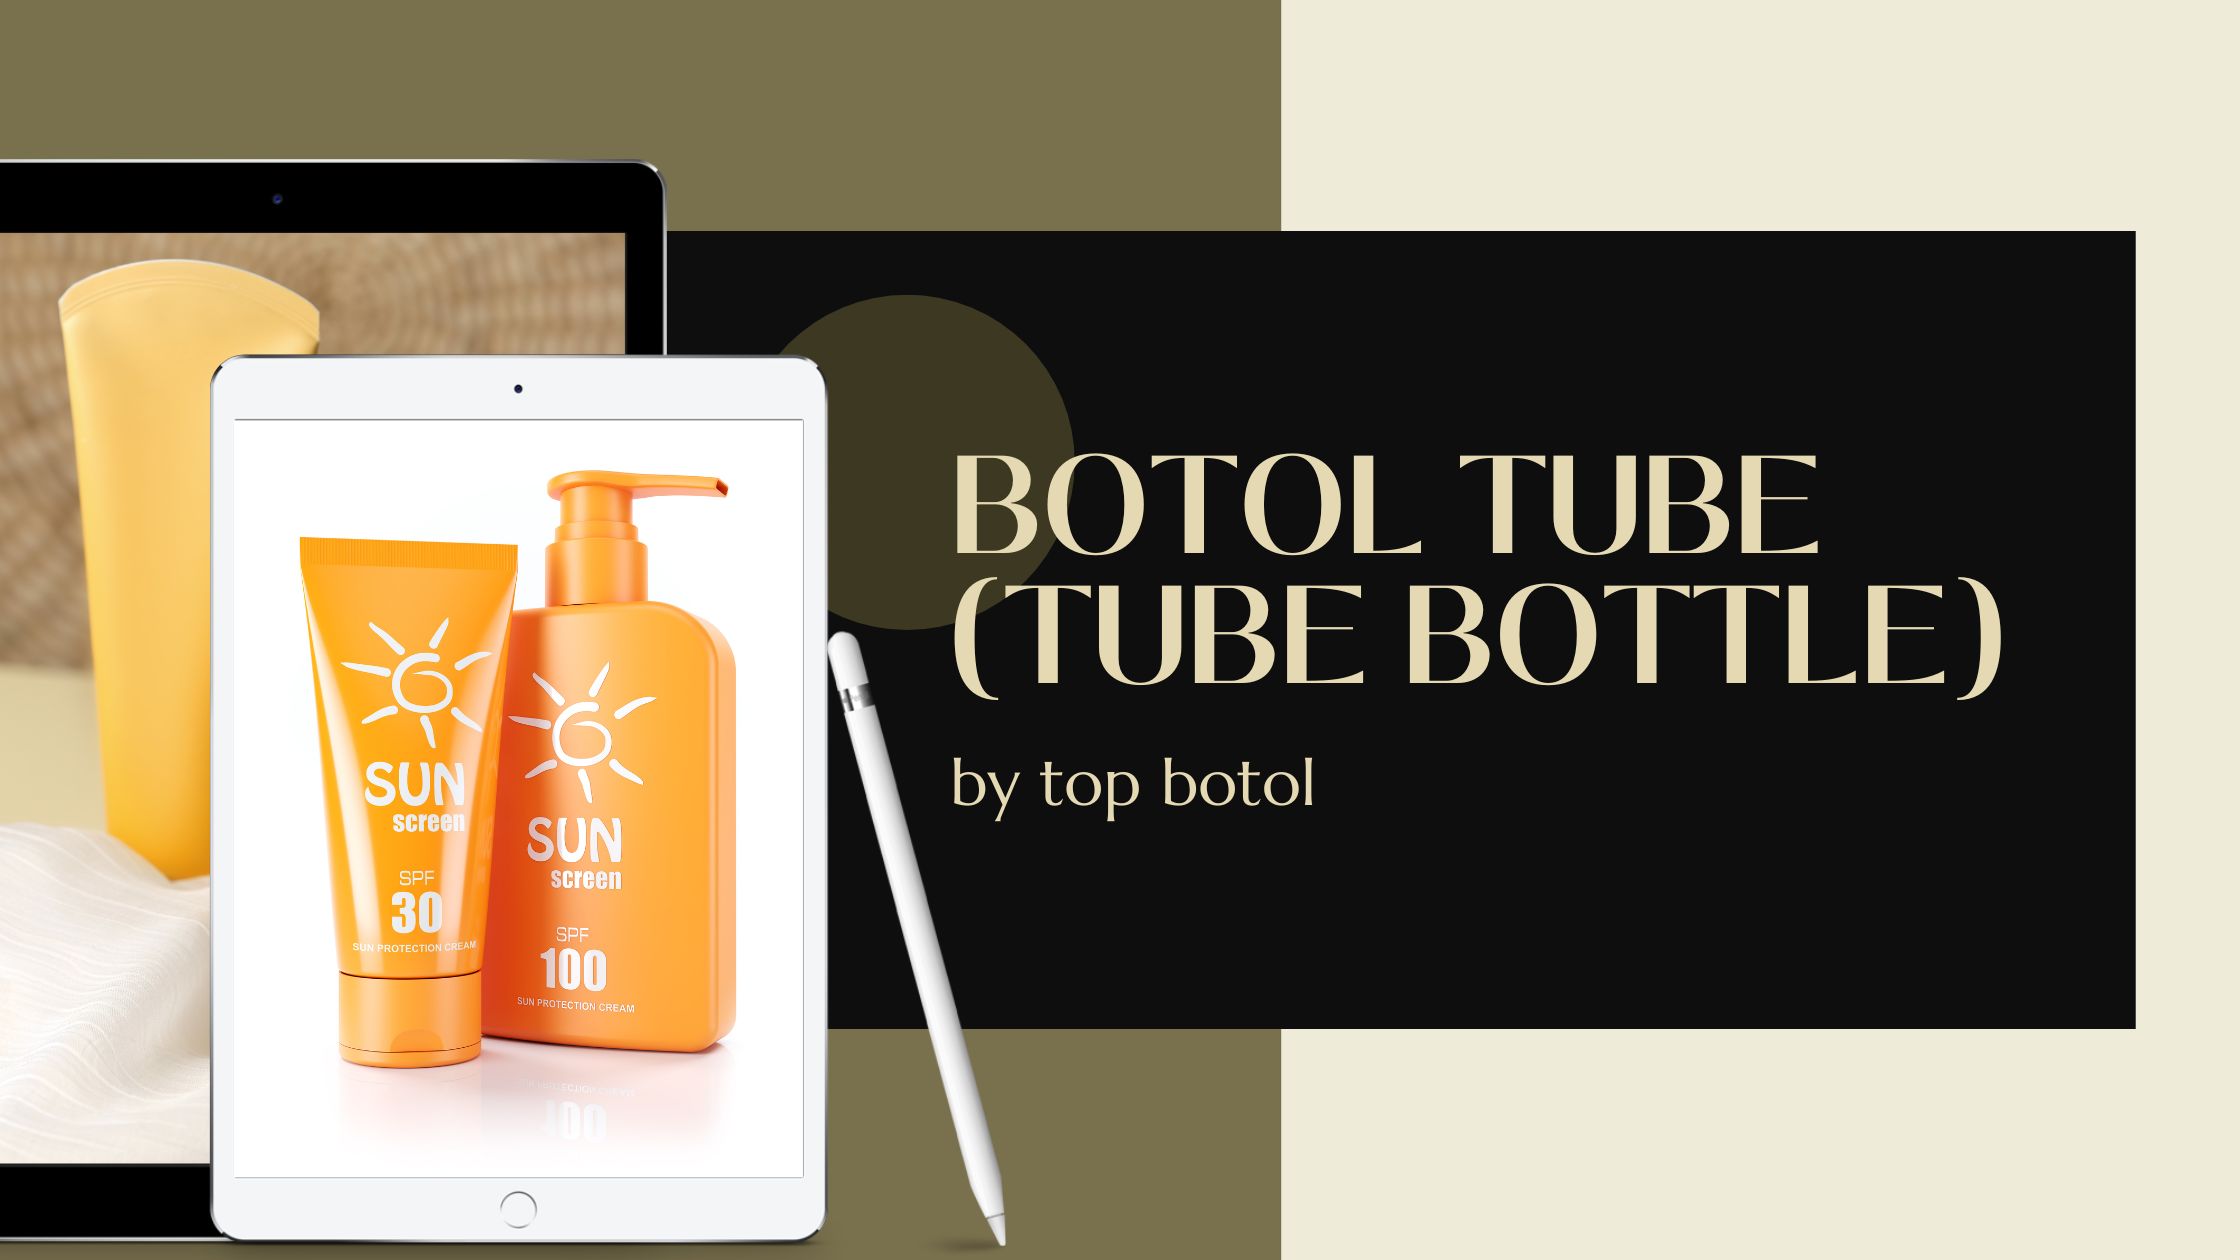 Botol Tube (Tube Bottle)